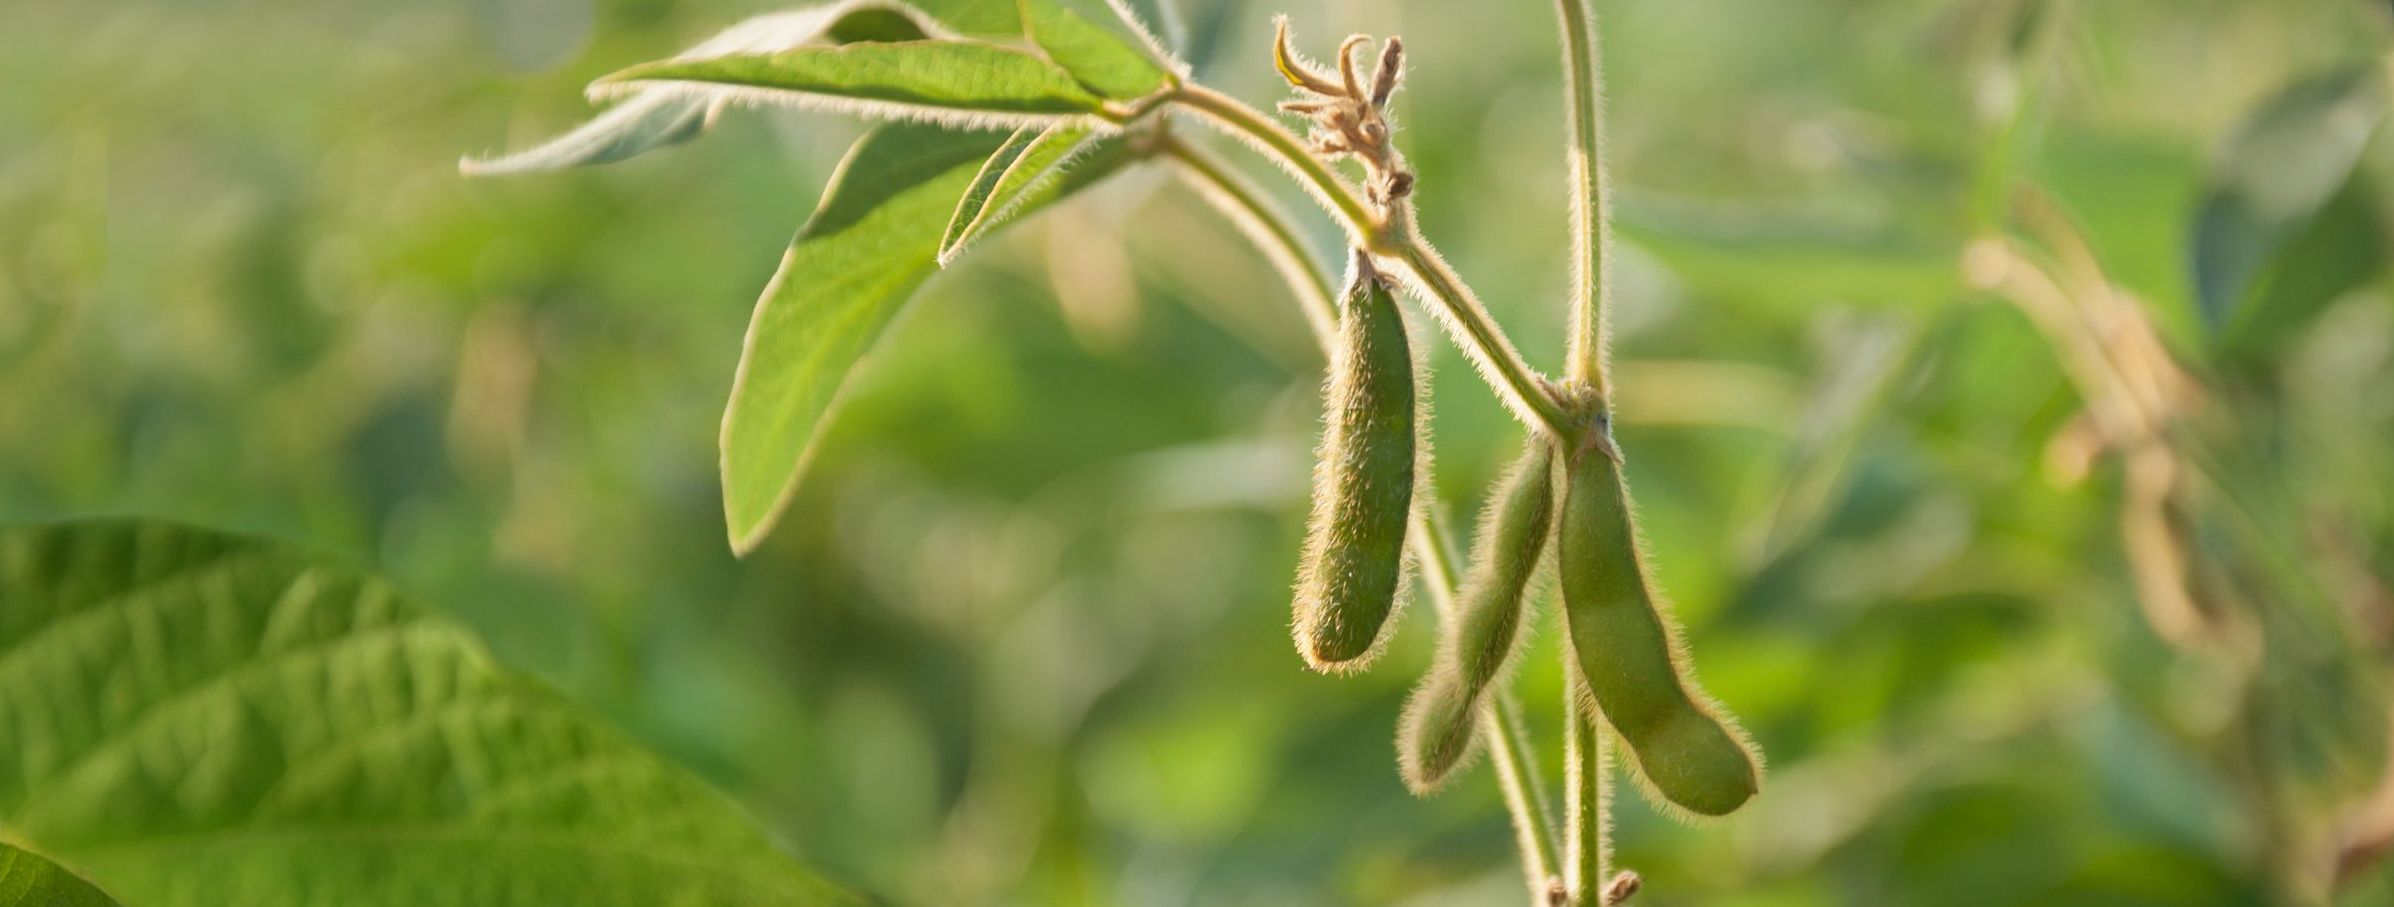 Sojapflanze mit Schoten in einem Sojafeld